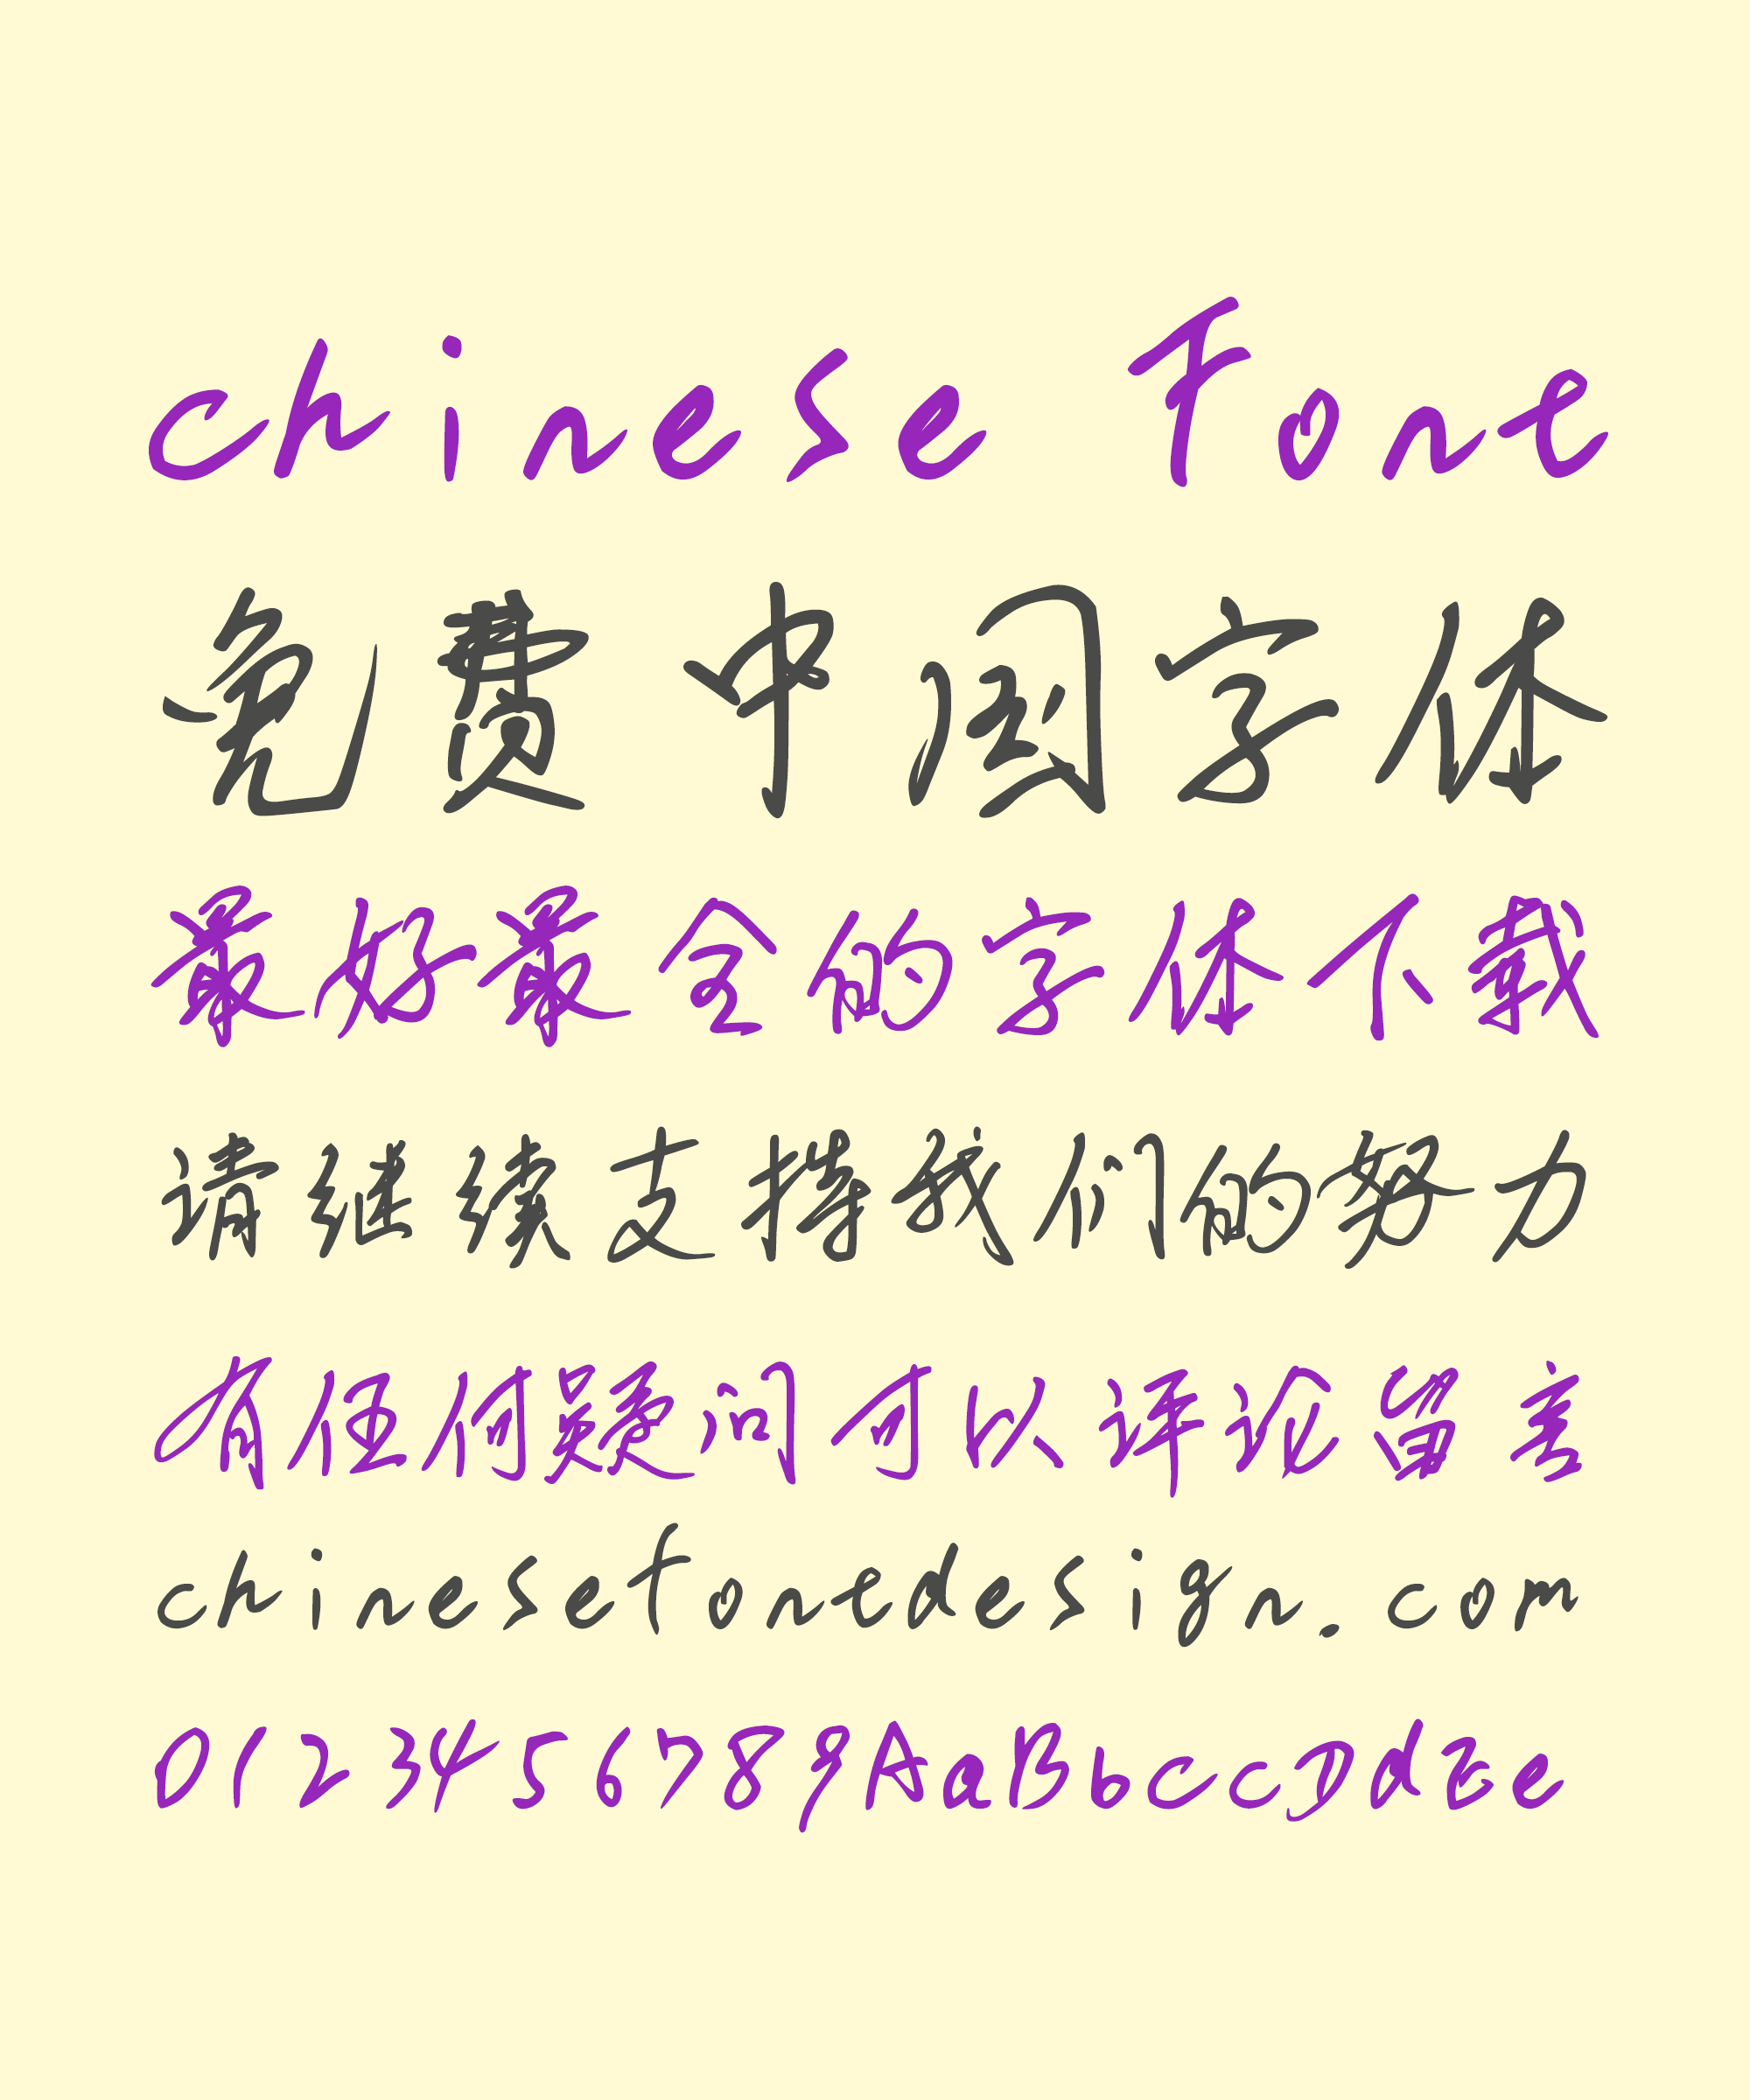 Guofu Li (liguofu) Handwriting Chinese Font -Simplified Chinese Fonts